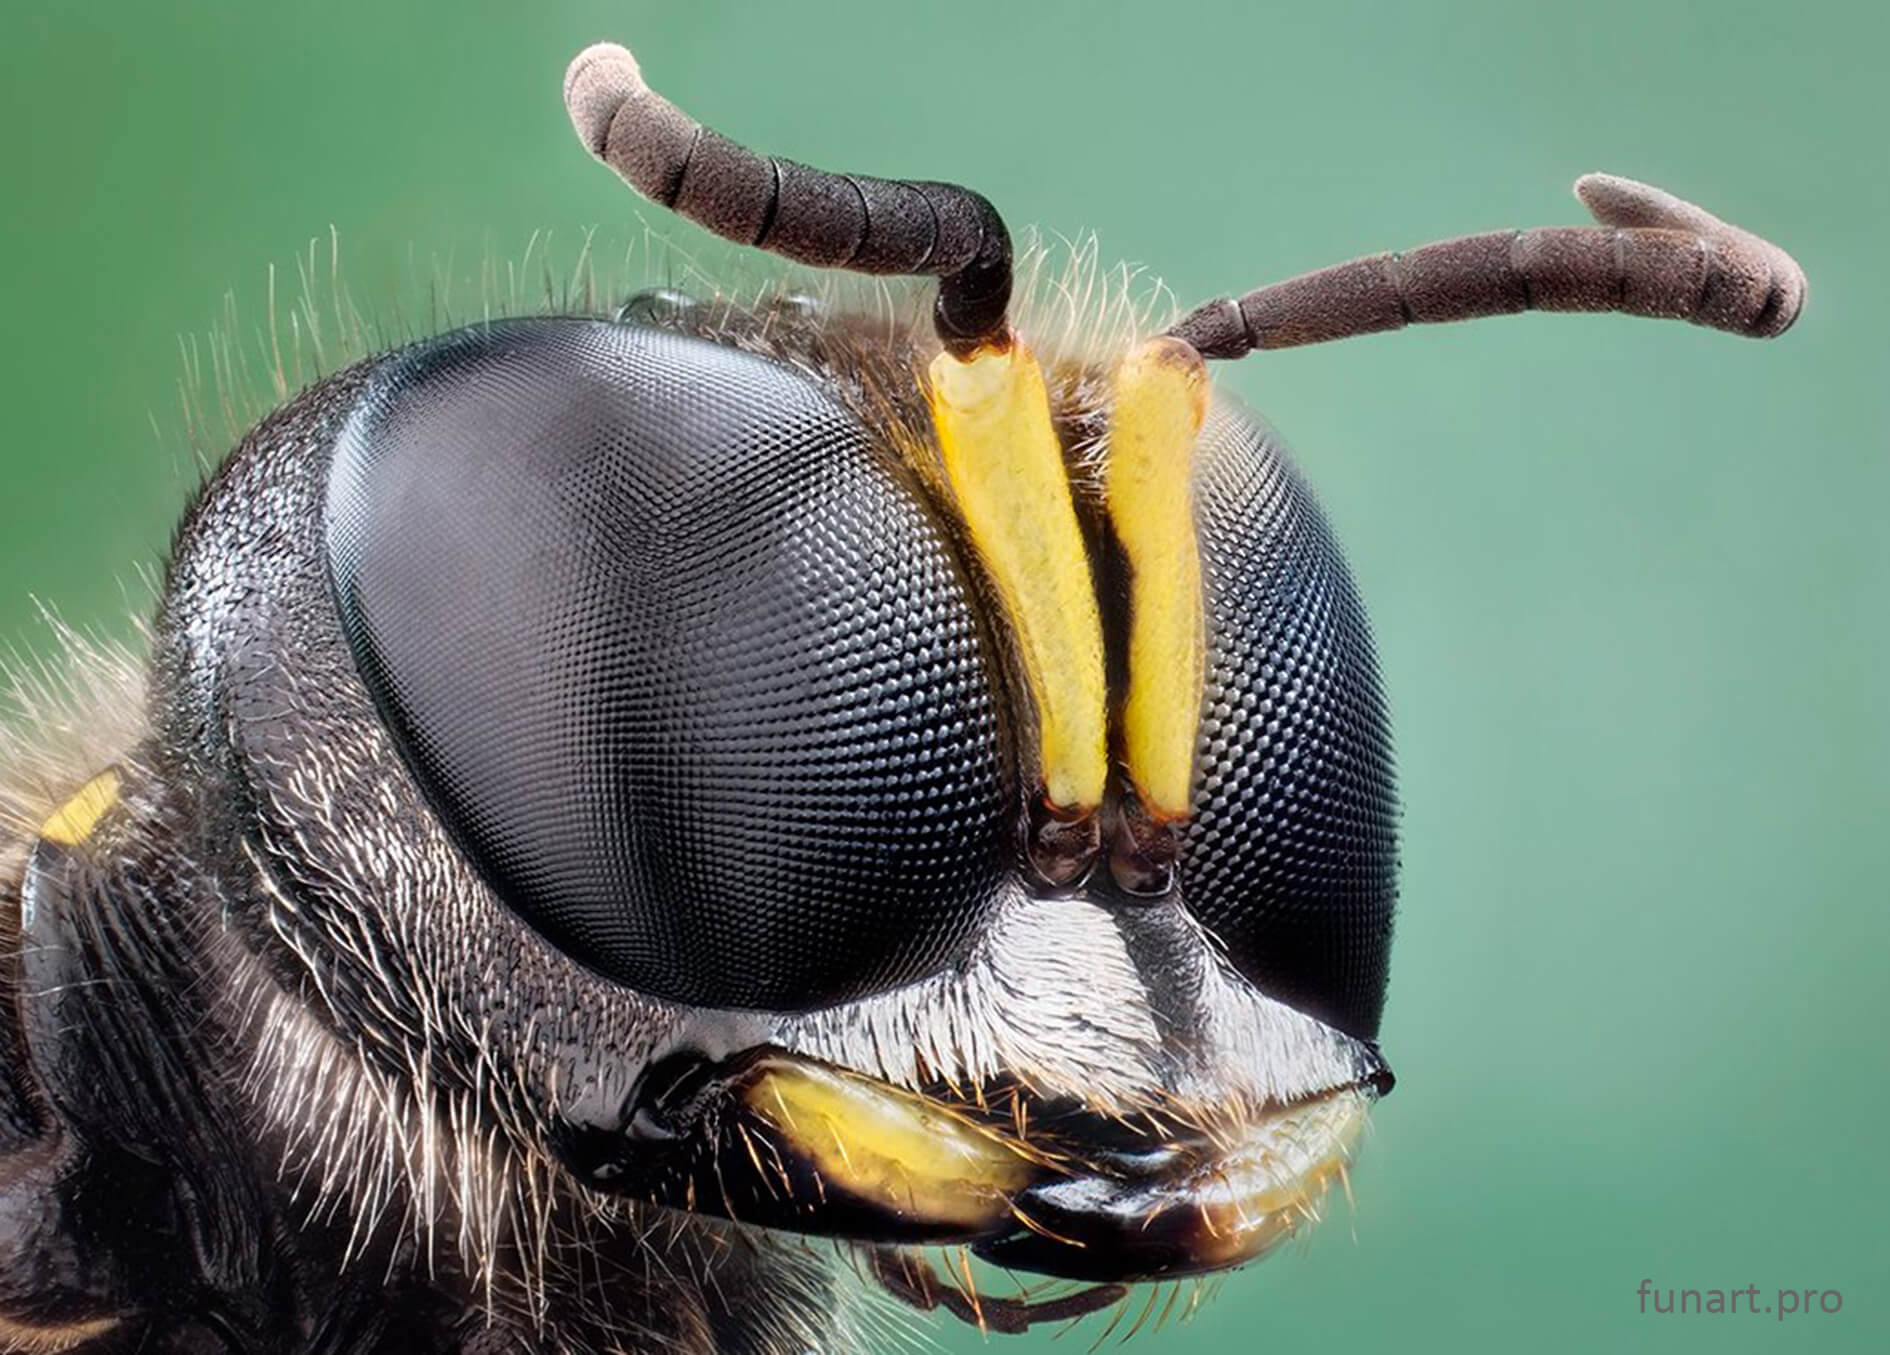 Заглянем насекомому в глаза через объектив микроскопа. Насекомые под микроскопом: комар, муха, мурайвей и др. 